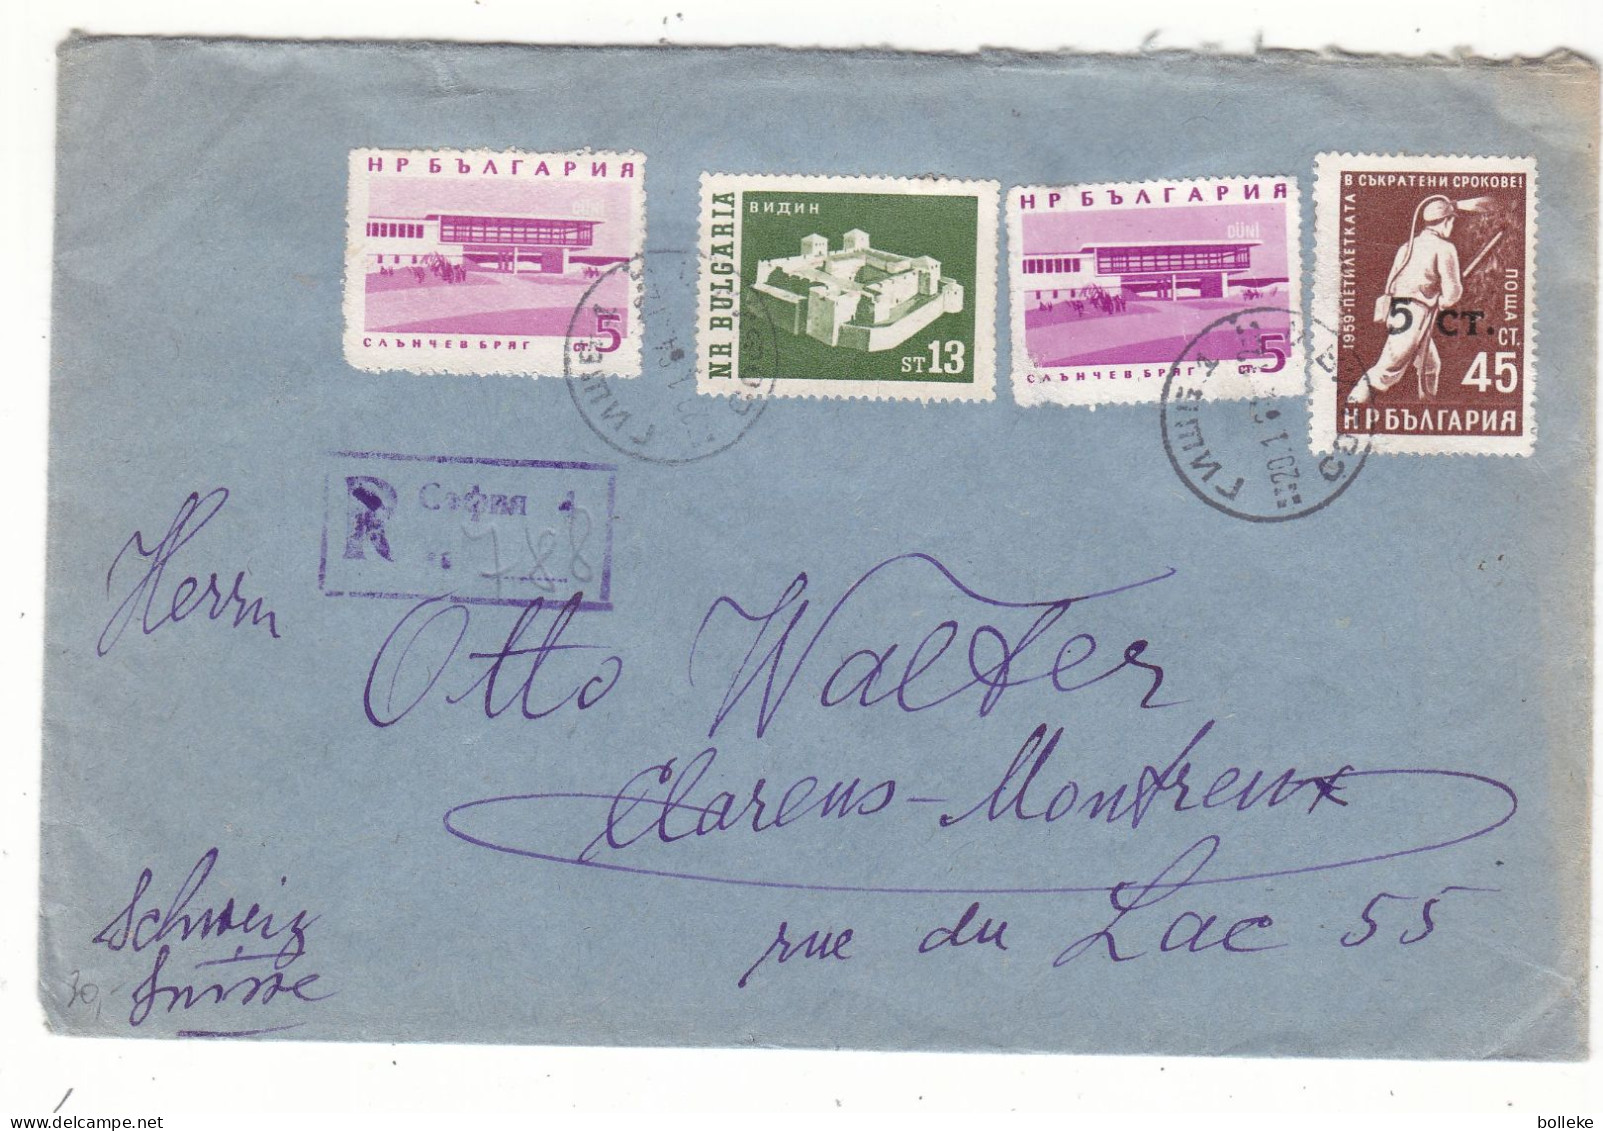 Bukgarie - Lettre Recom De 1964  - Oblit Sofia - Exp Vers Clarens Montreux - - Covers & Documents